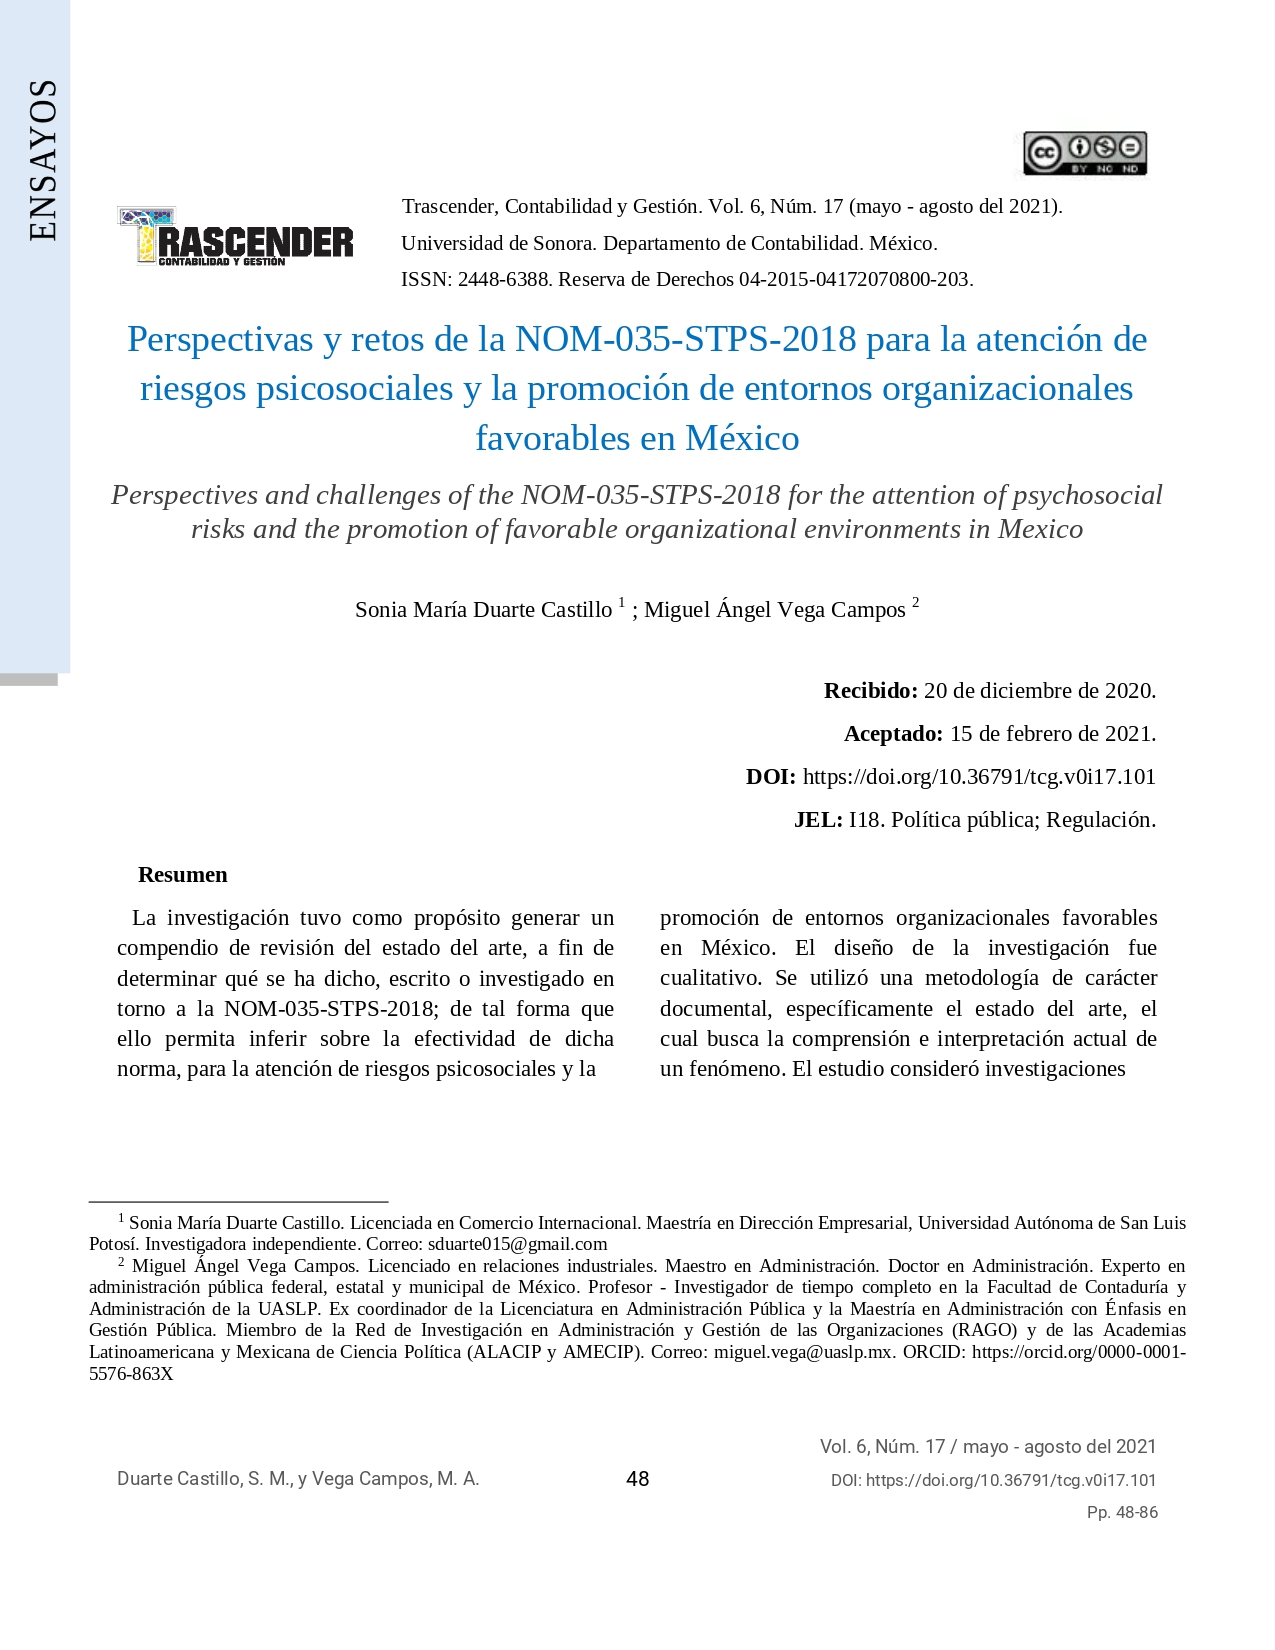 Perspectivas y retos de la NOM-035-STPS-2018 para la atención de riesgos psicosociales y la promoción de entornos organizacionales favorables en México